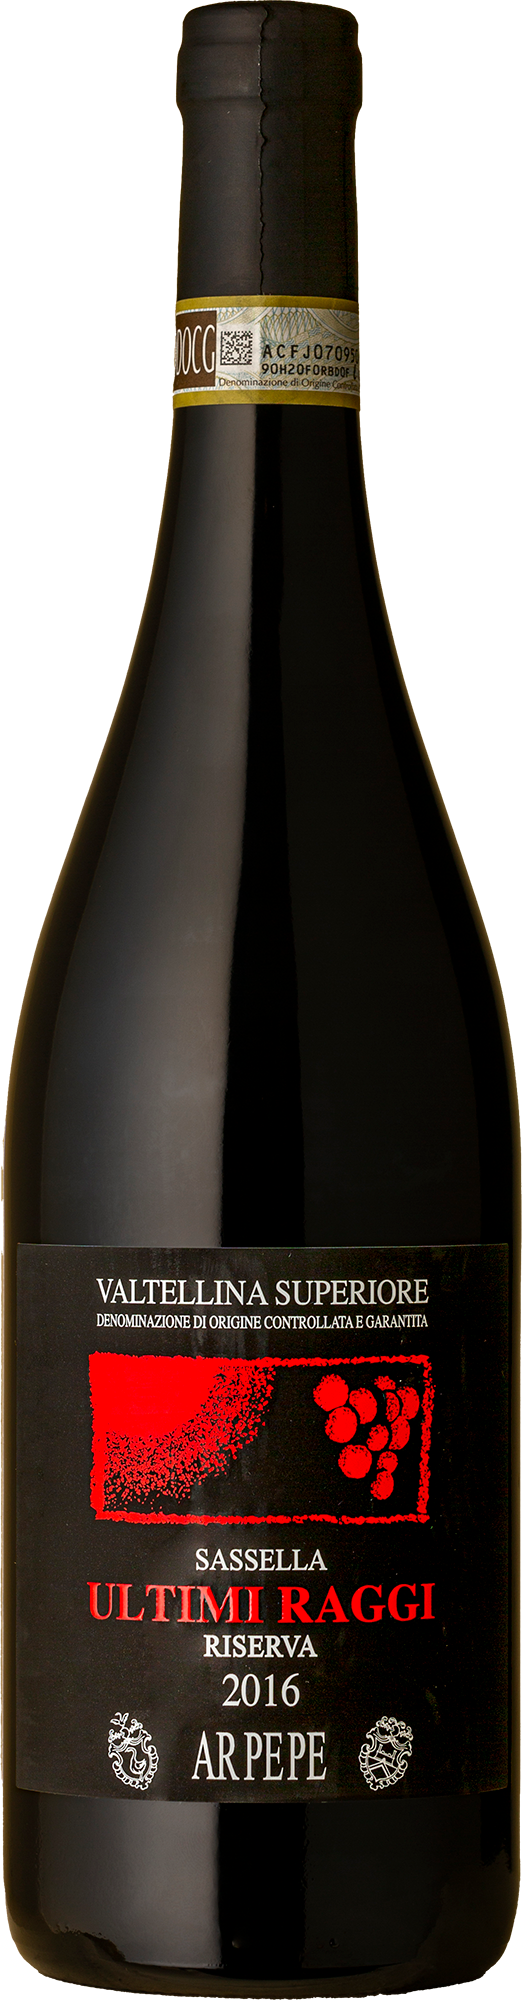 Ar.Pe.Pe - Valtellina Superior Sassella Riserva Ultimi Raggi Nebbiolo 2016 Red Wine